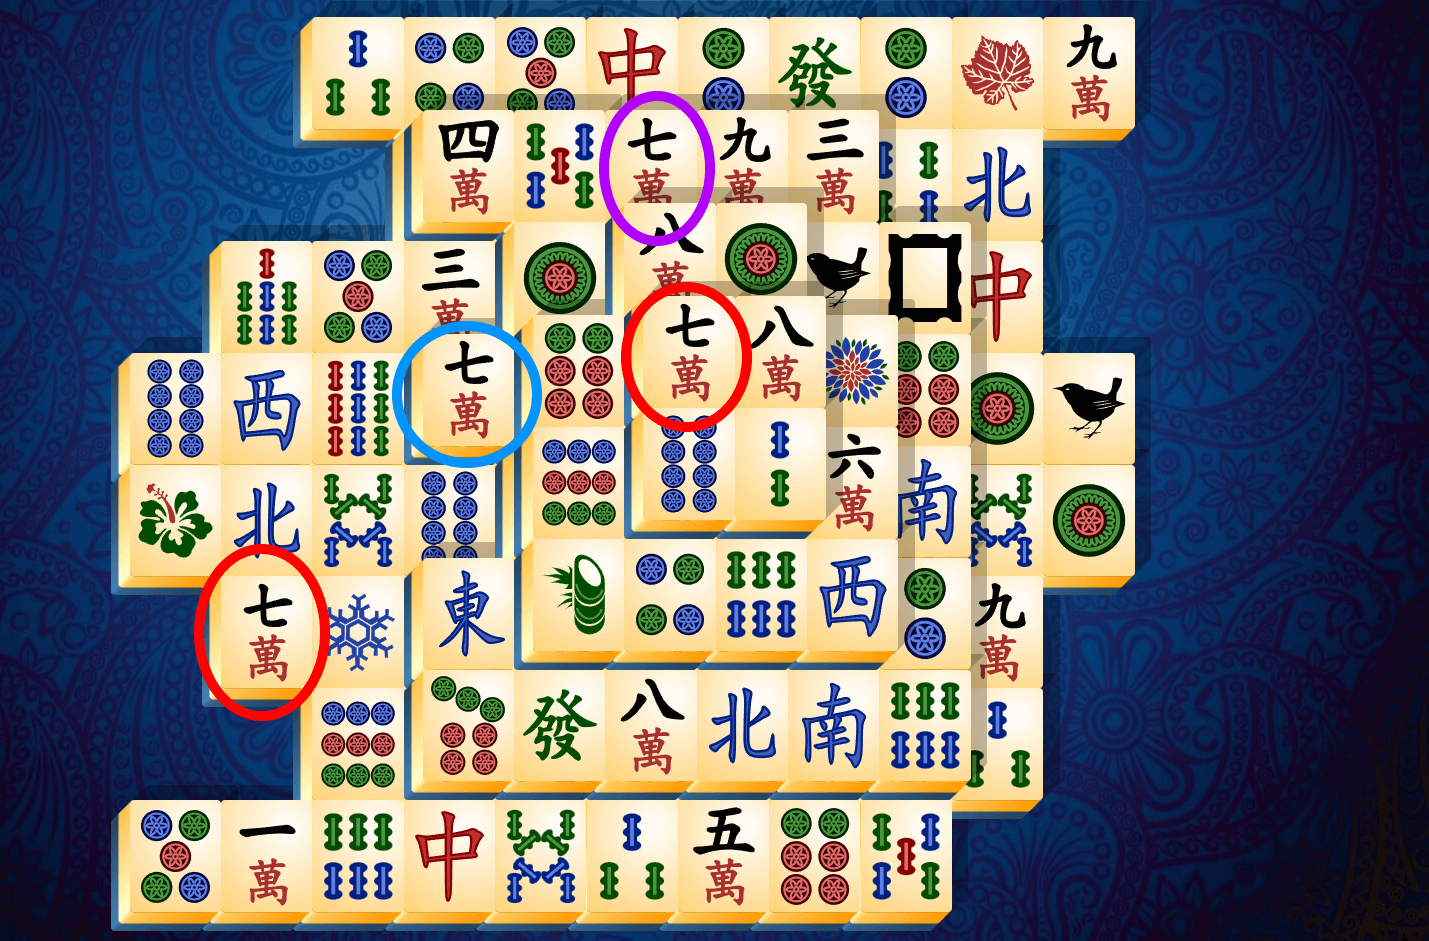 Anleitung zu Mahjong Solitär, Schritt 9